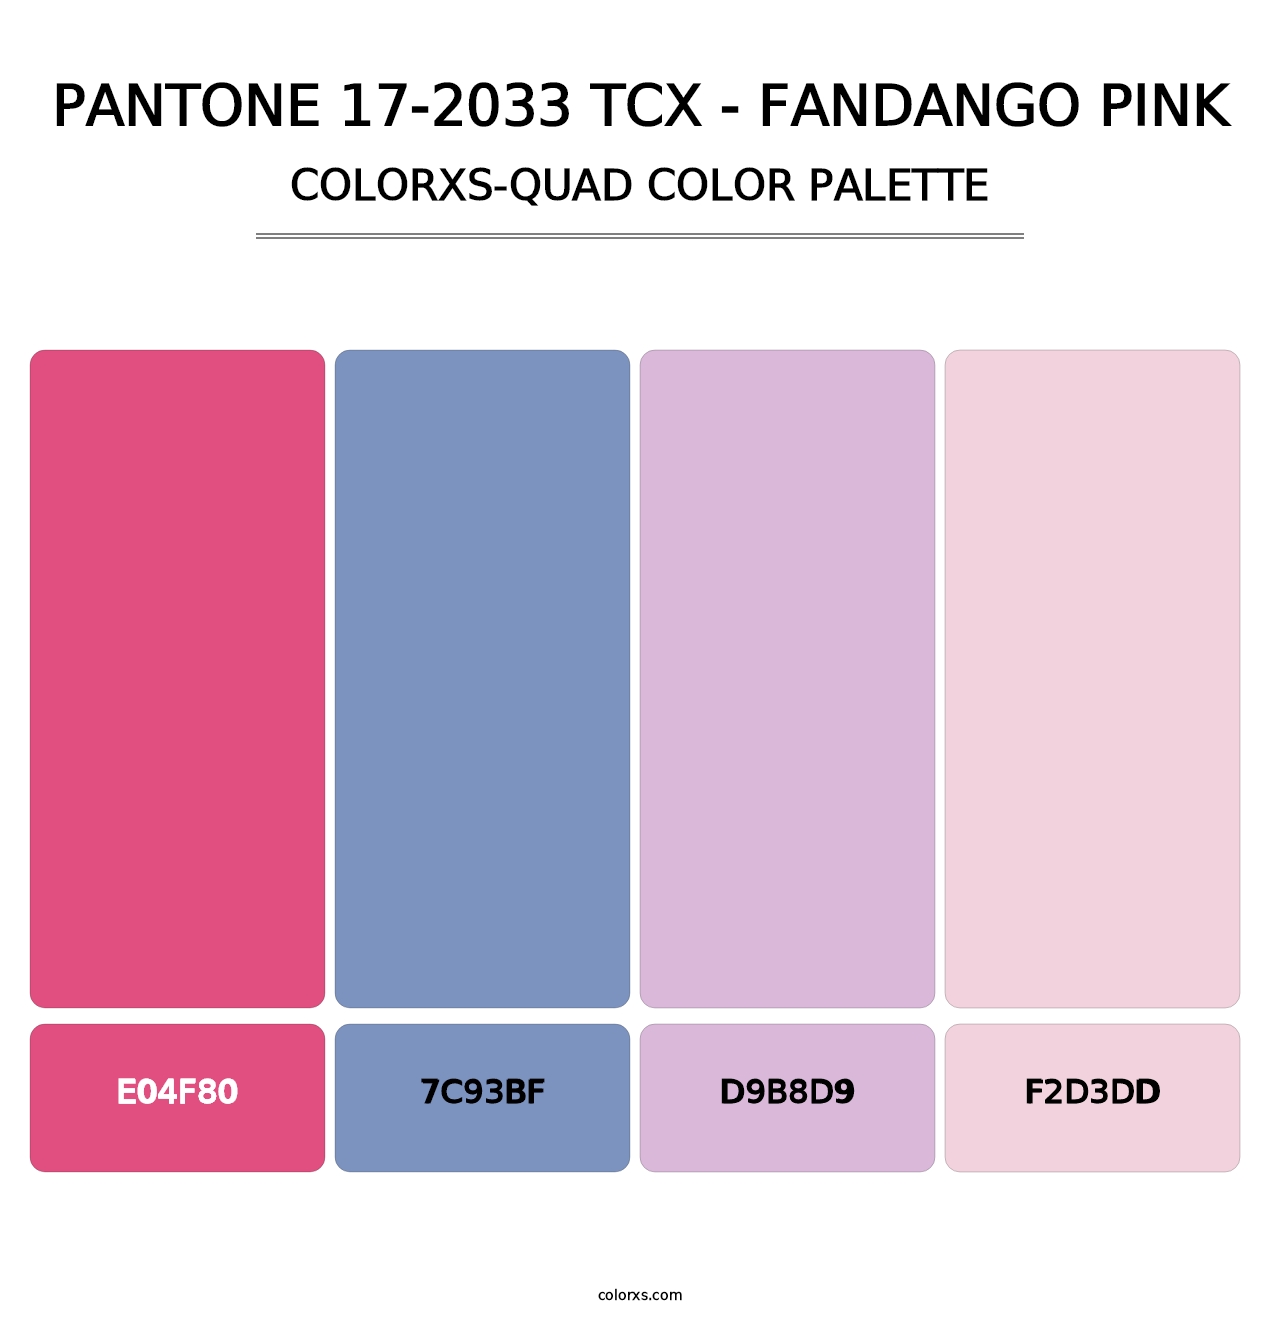 PANTONE 17-2033 TCX - Fandango Pink - Colorxs Quad Palette